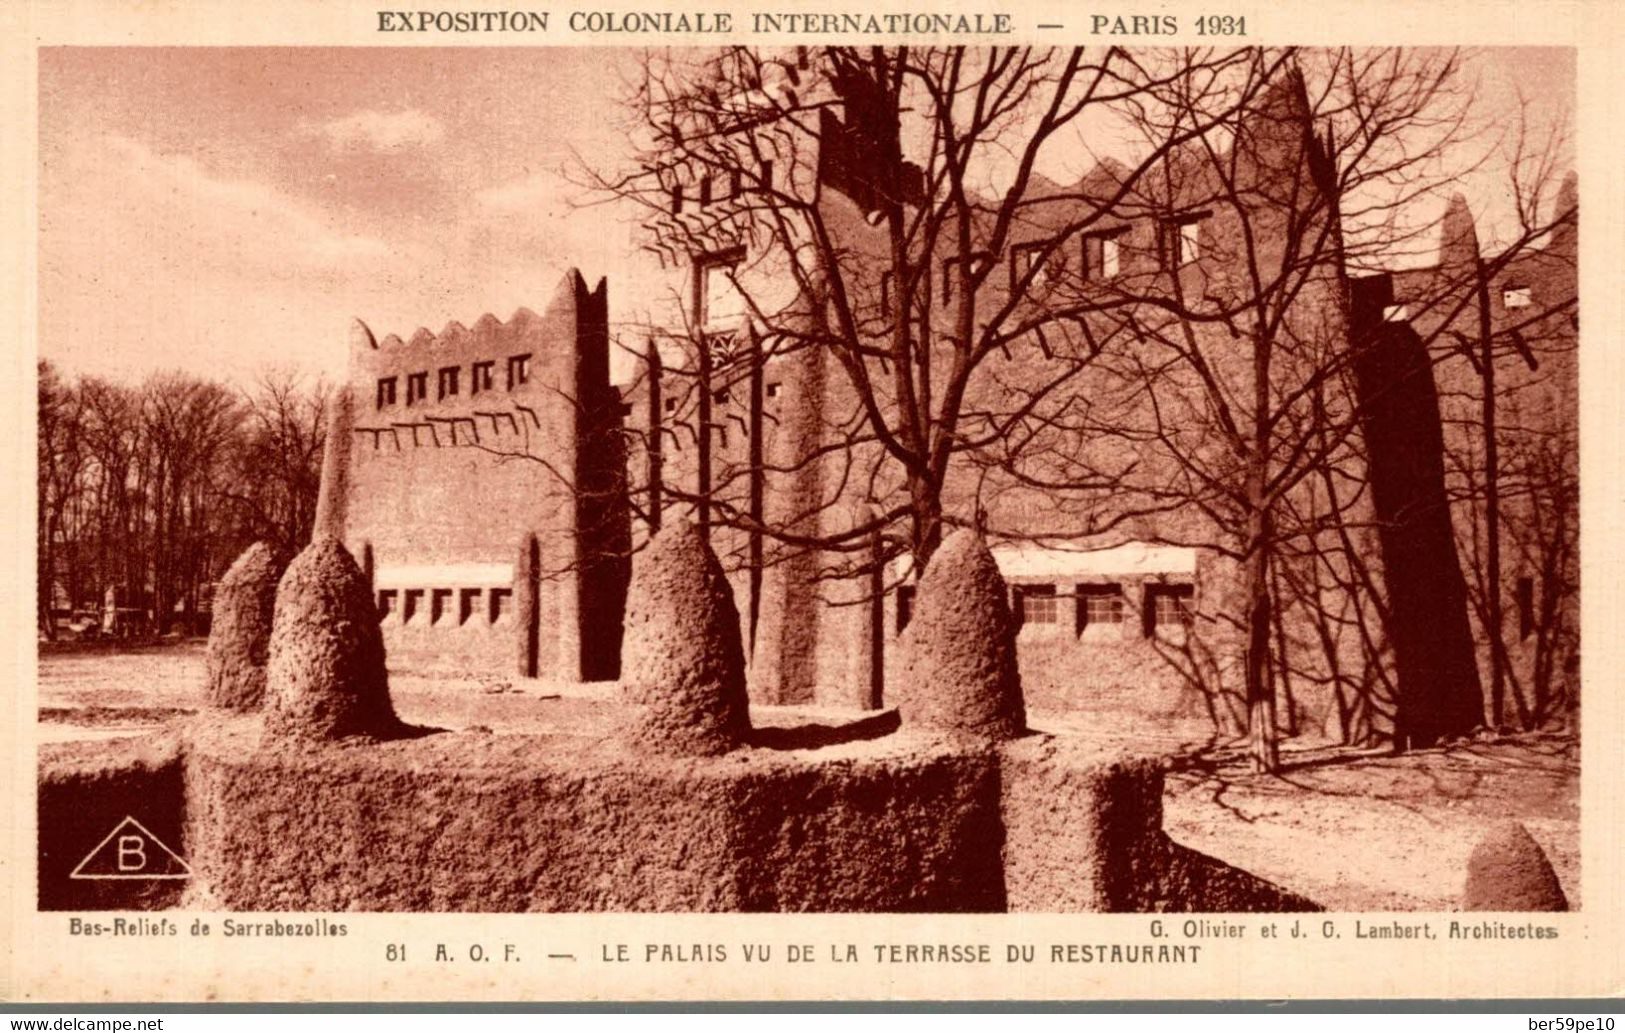 75 PARIS 1931 EXPOSITION COLONIALE INTERNATIONALE A.O.F. LE PALAIS VU DE LA TERRASSE DU RESTAURANT - Exposiciones